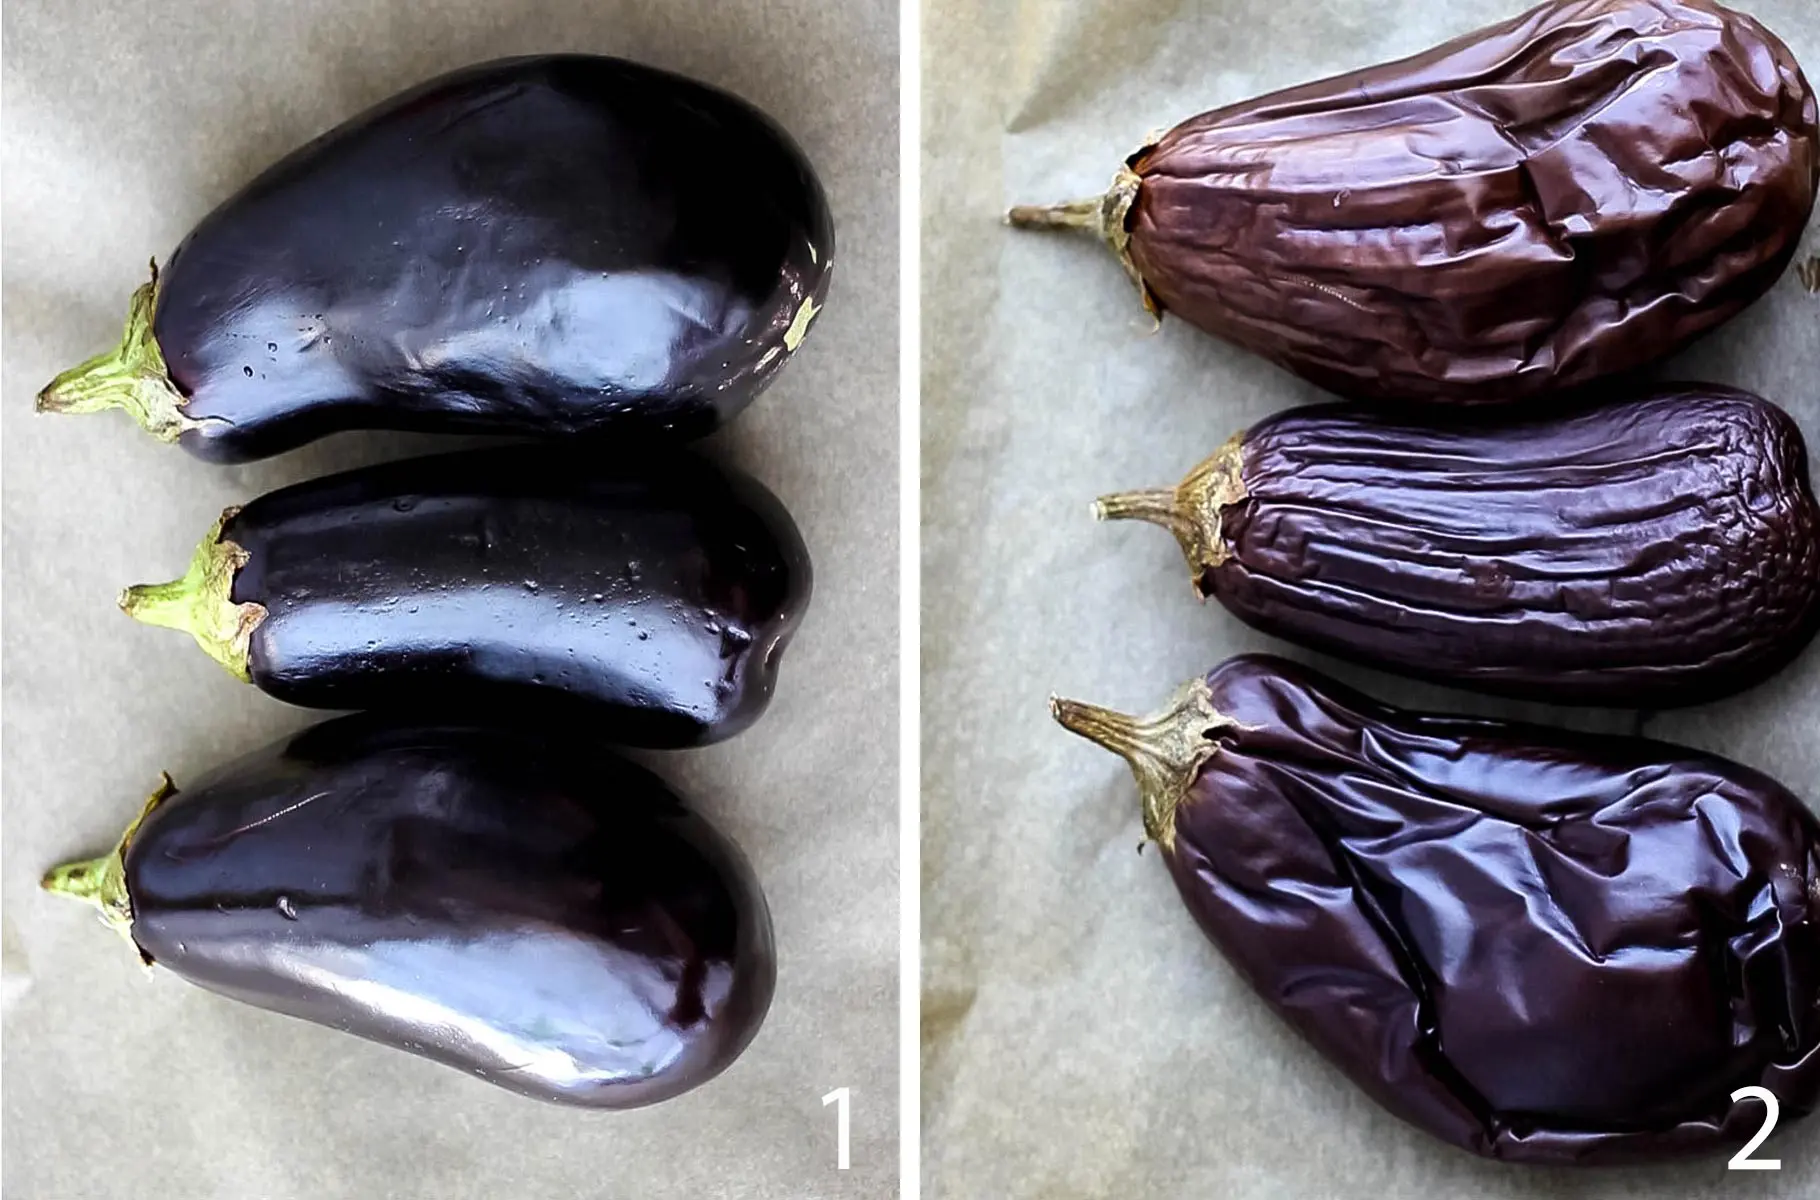 Three eggplants before roasting and three eggplants after roasting